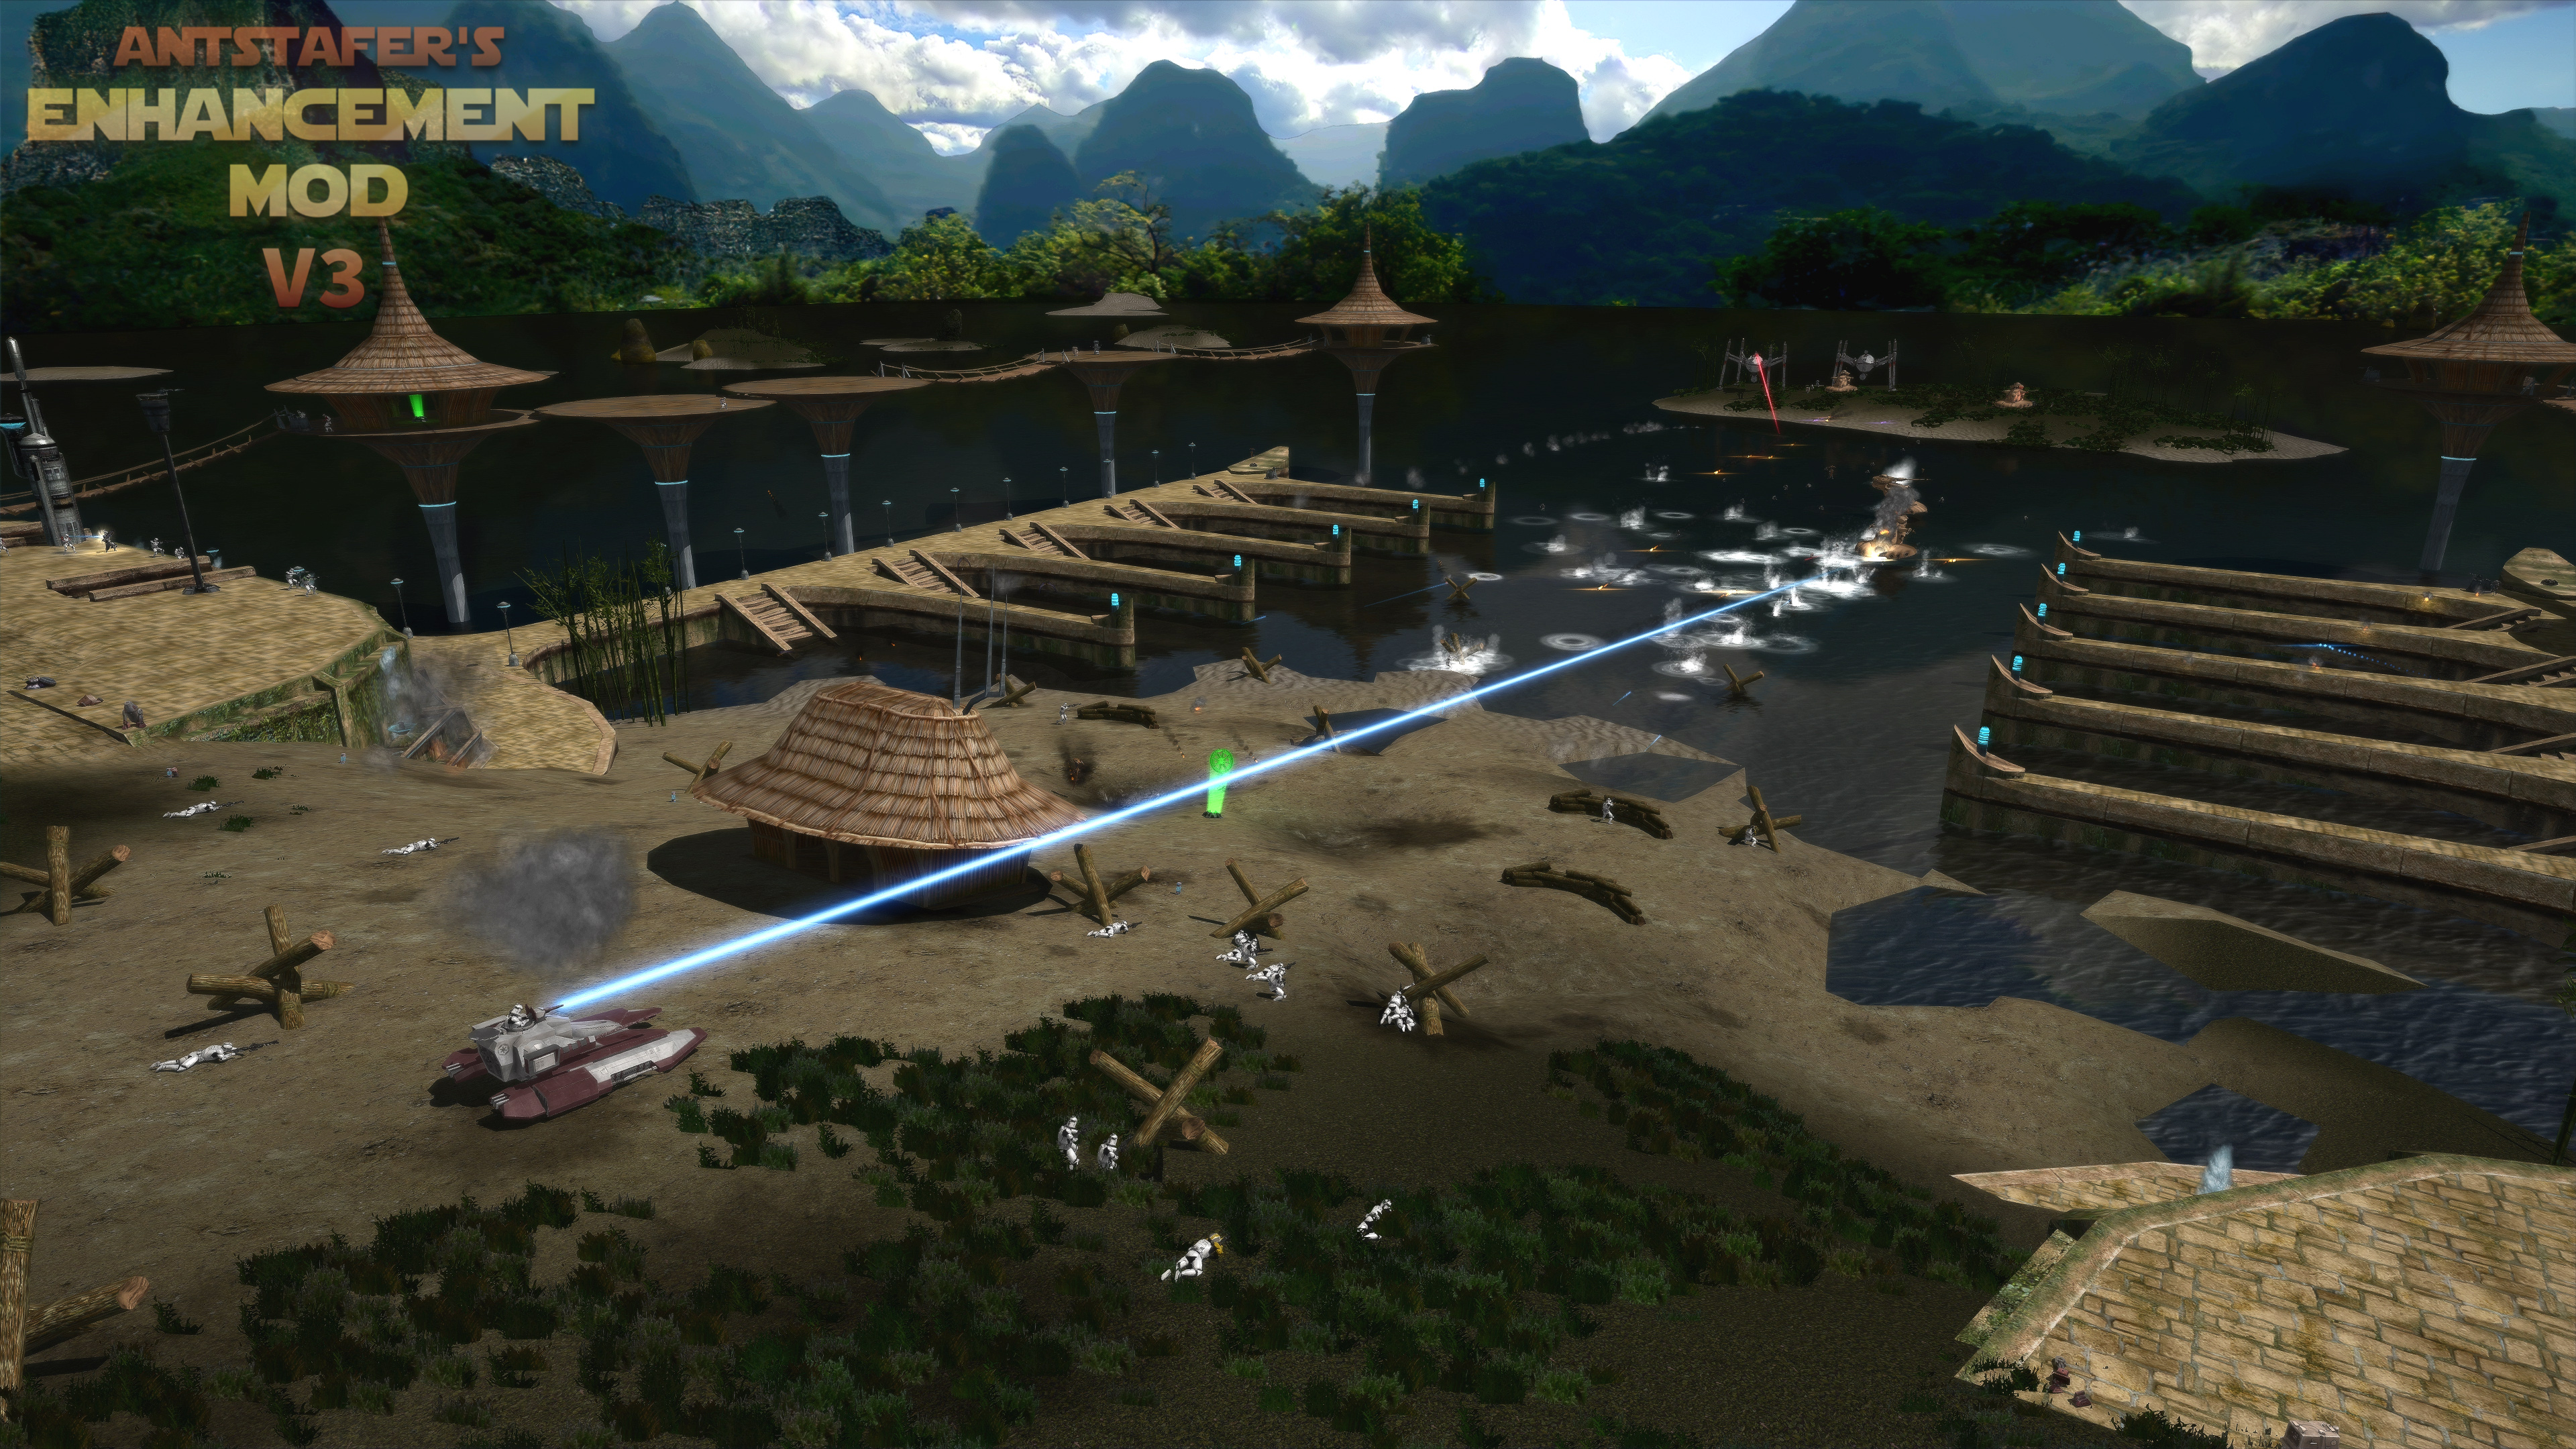 Star Wars Battlefront Real Life Mod Download